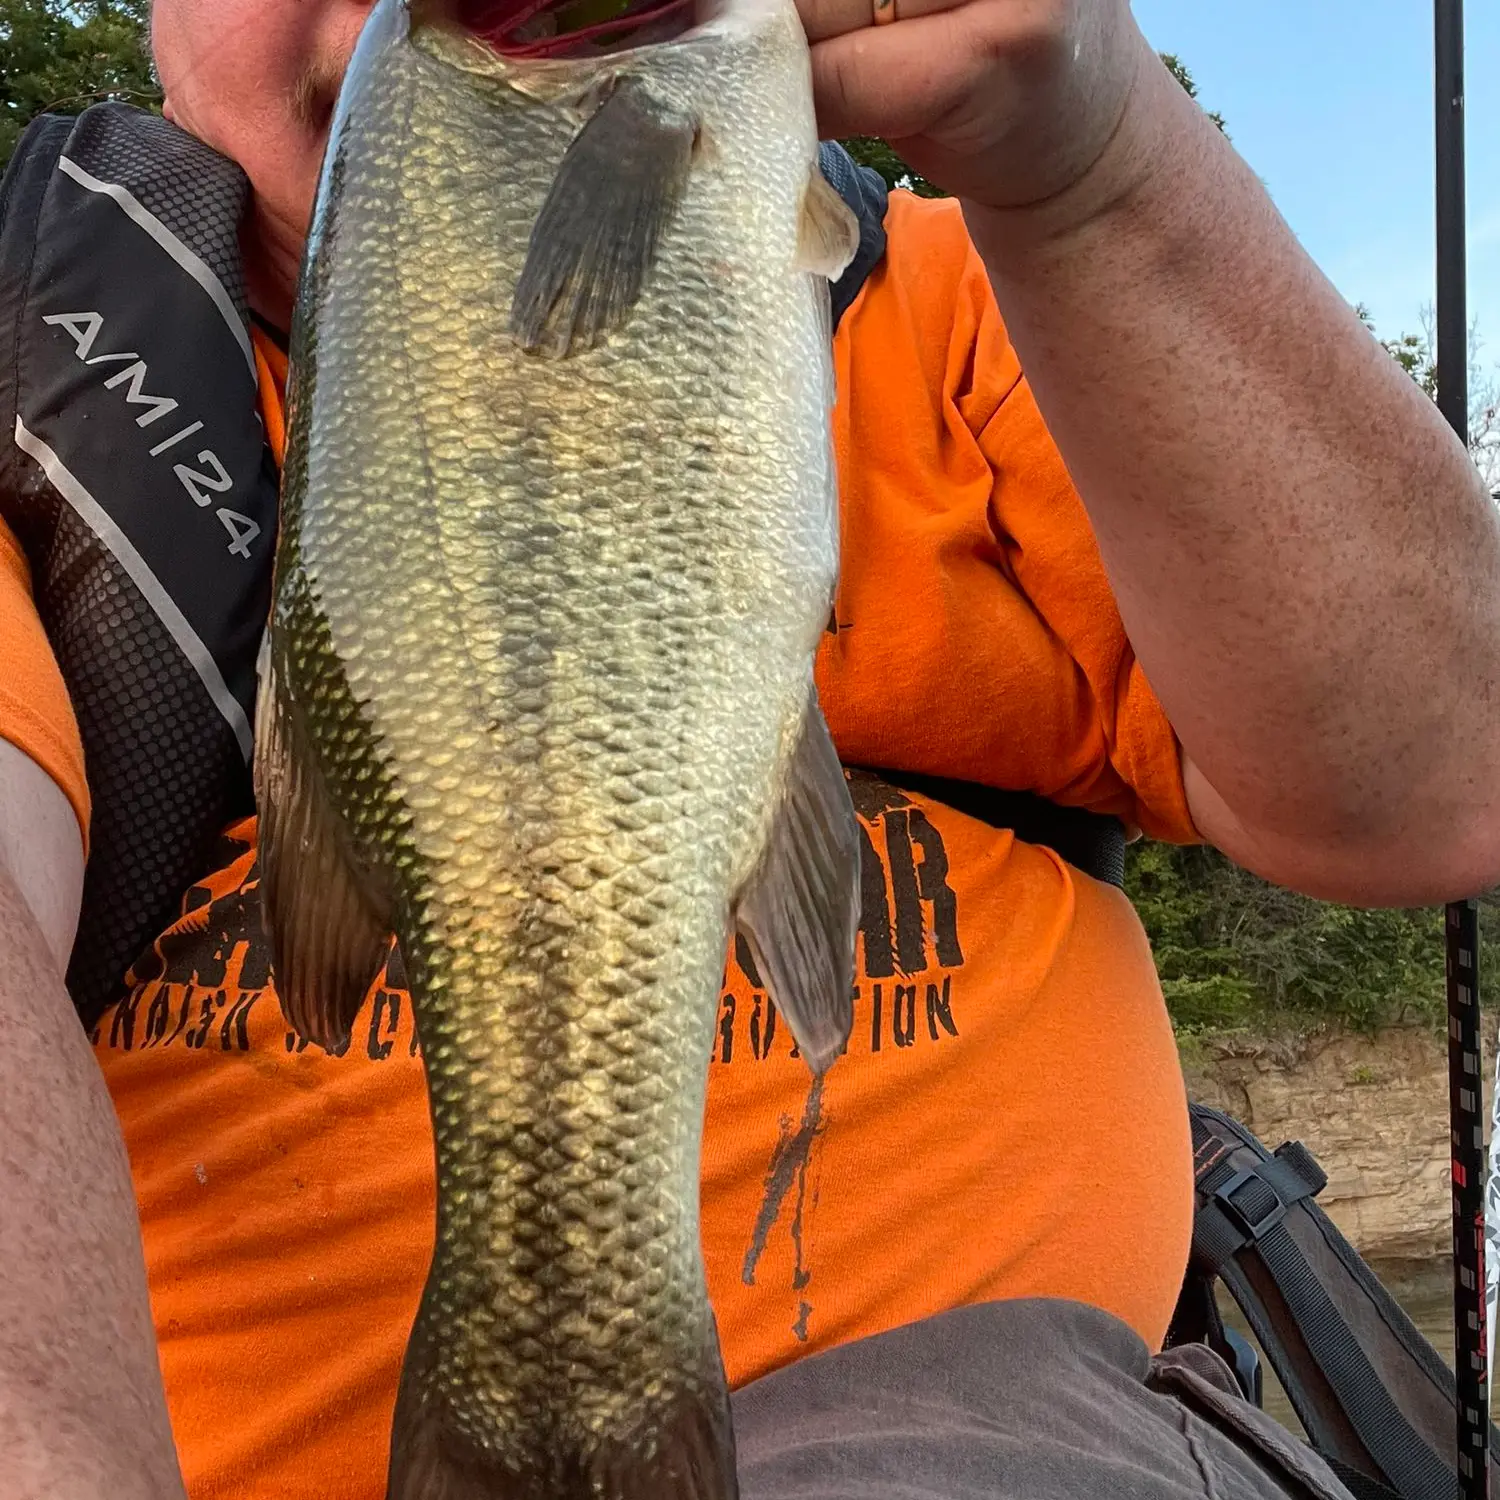 BIG Crappie in Kansas City Jacomo lake 